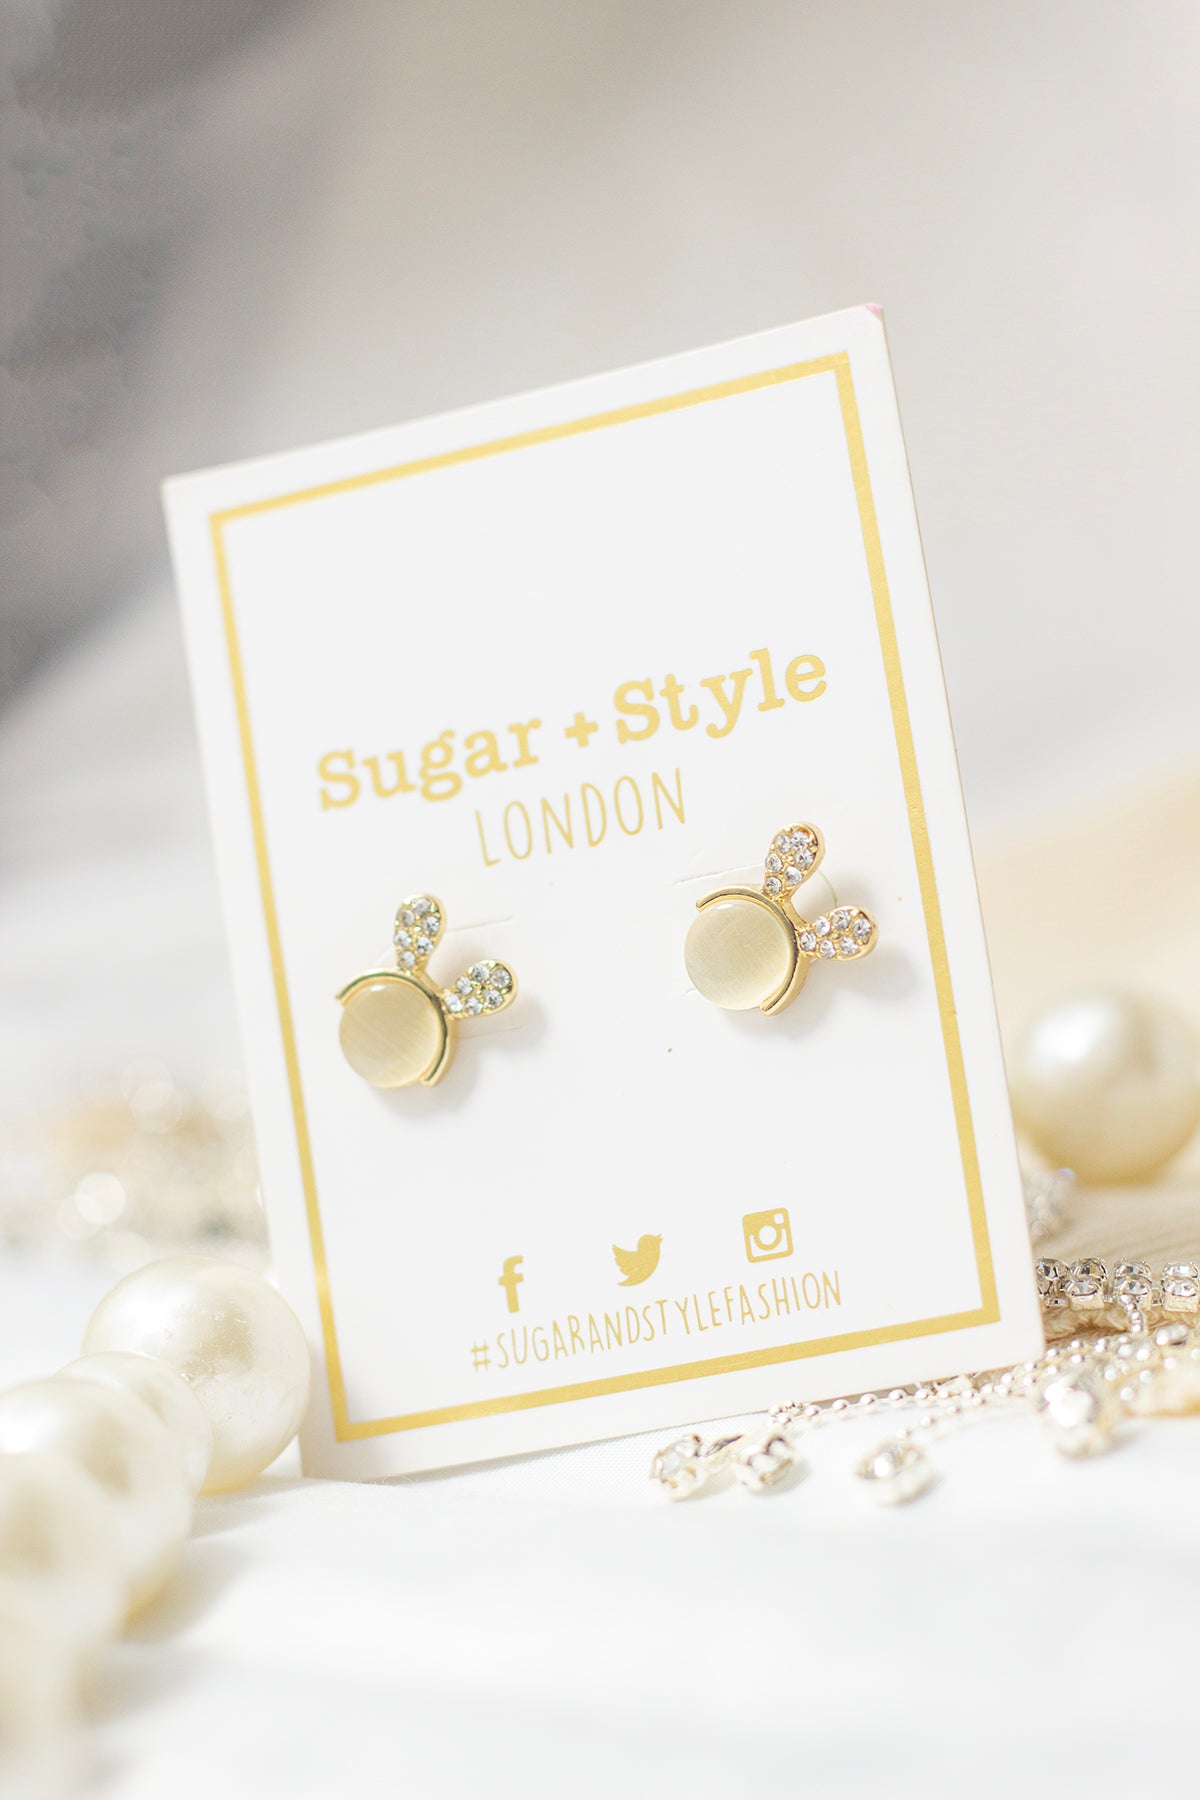 Bunny Ear Earrings - Sugar + Style